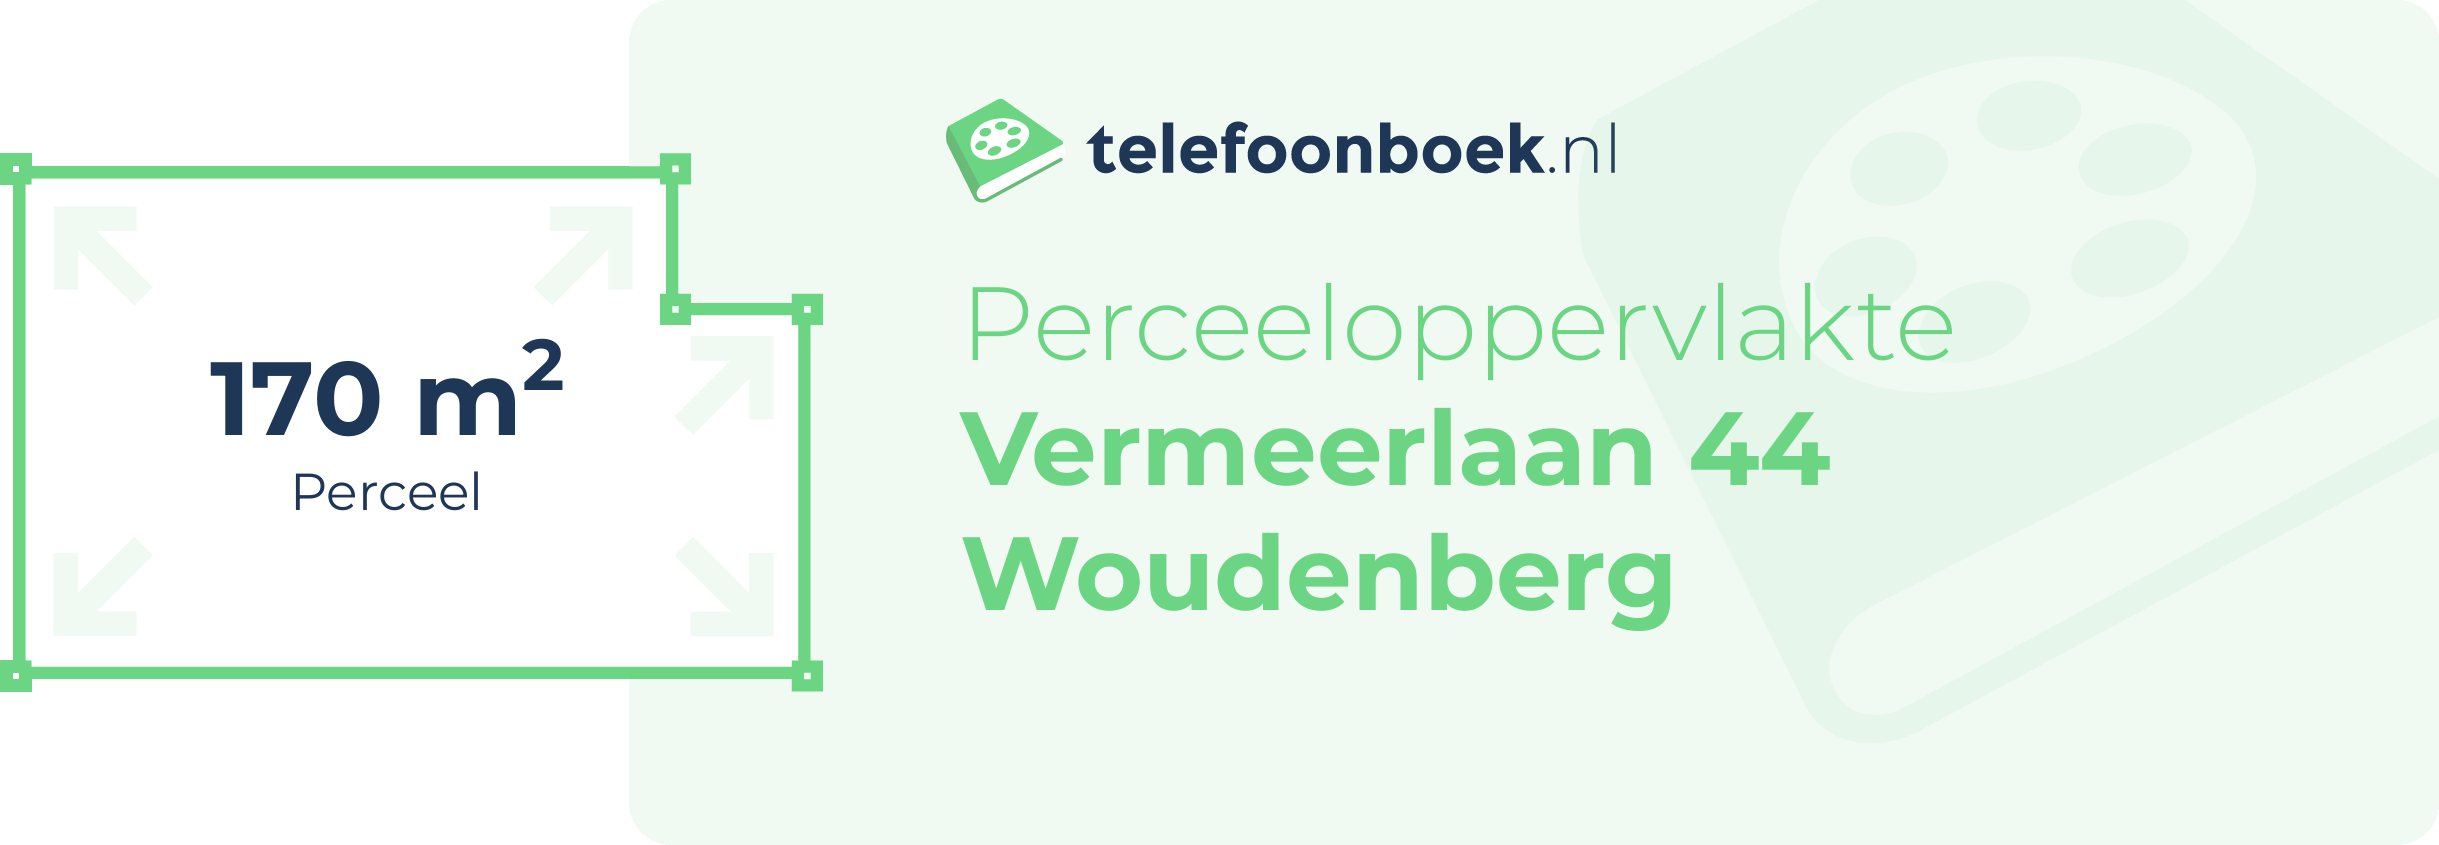 Perceeloppervlakte Vermeerlaan 44 Woudenberg